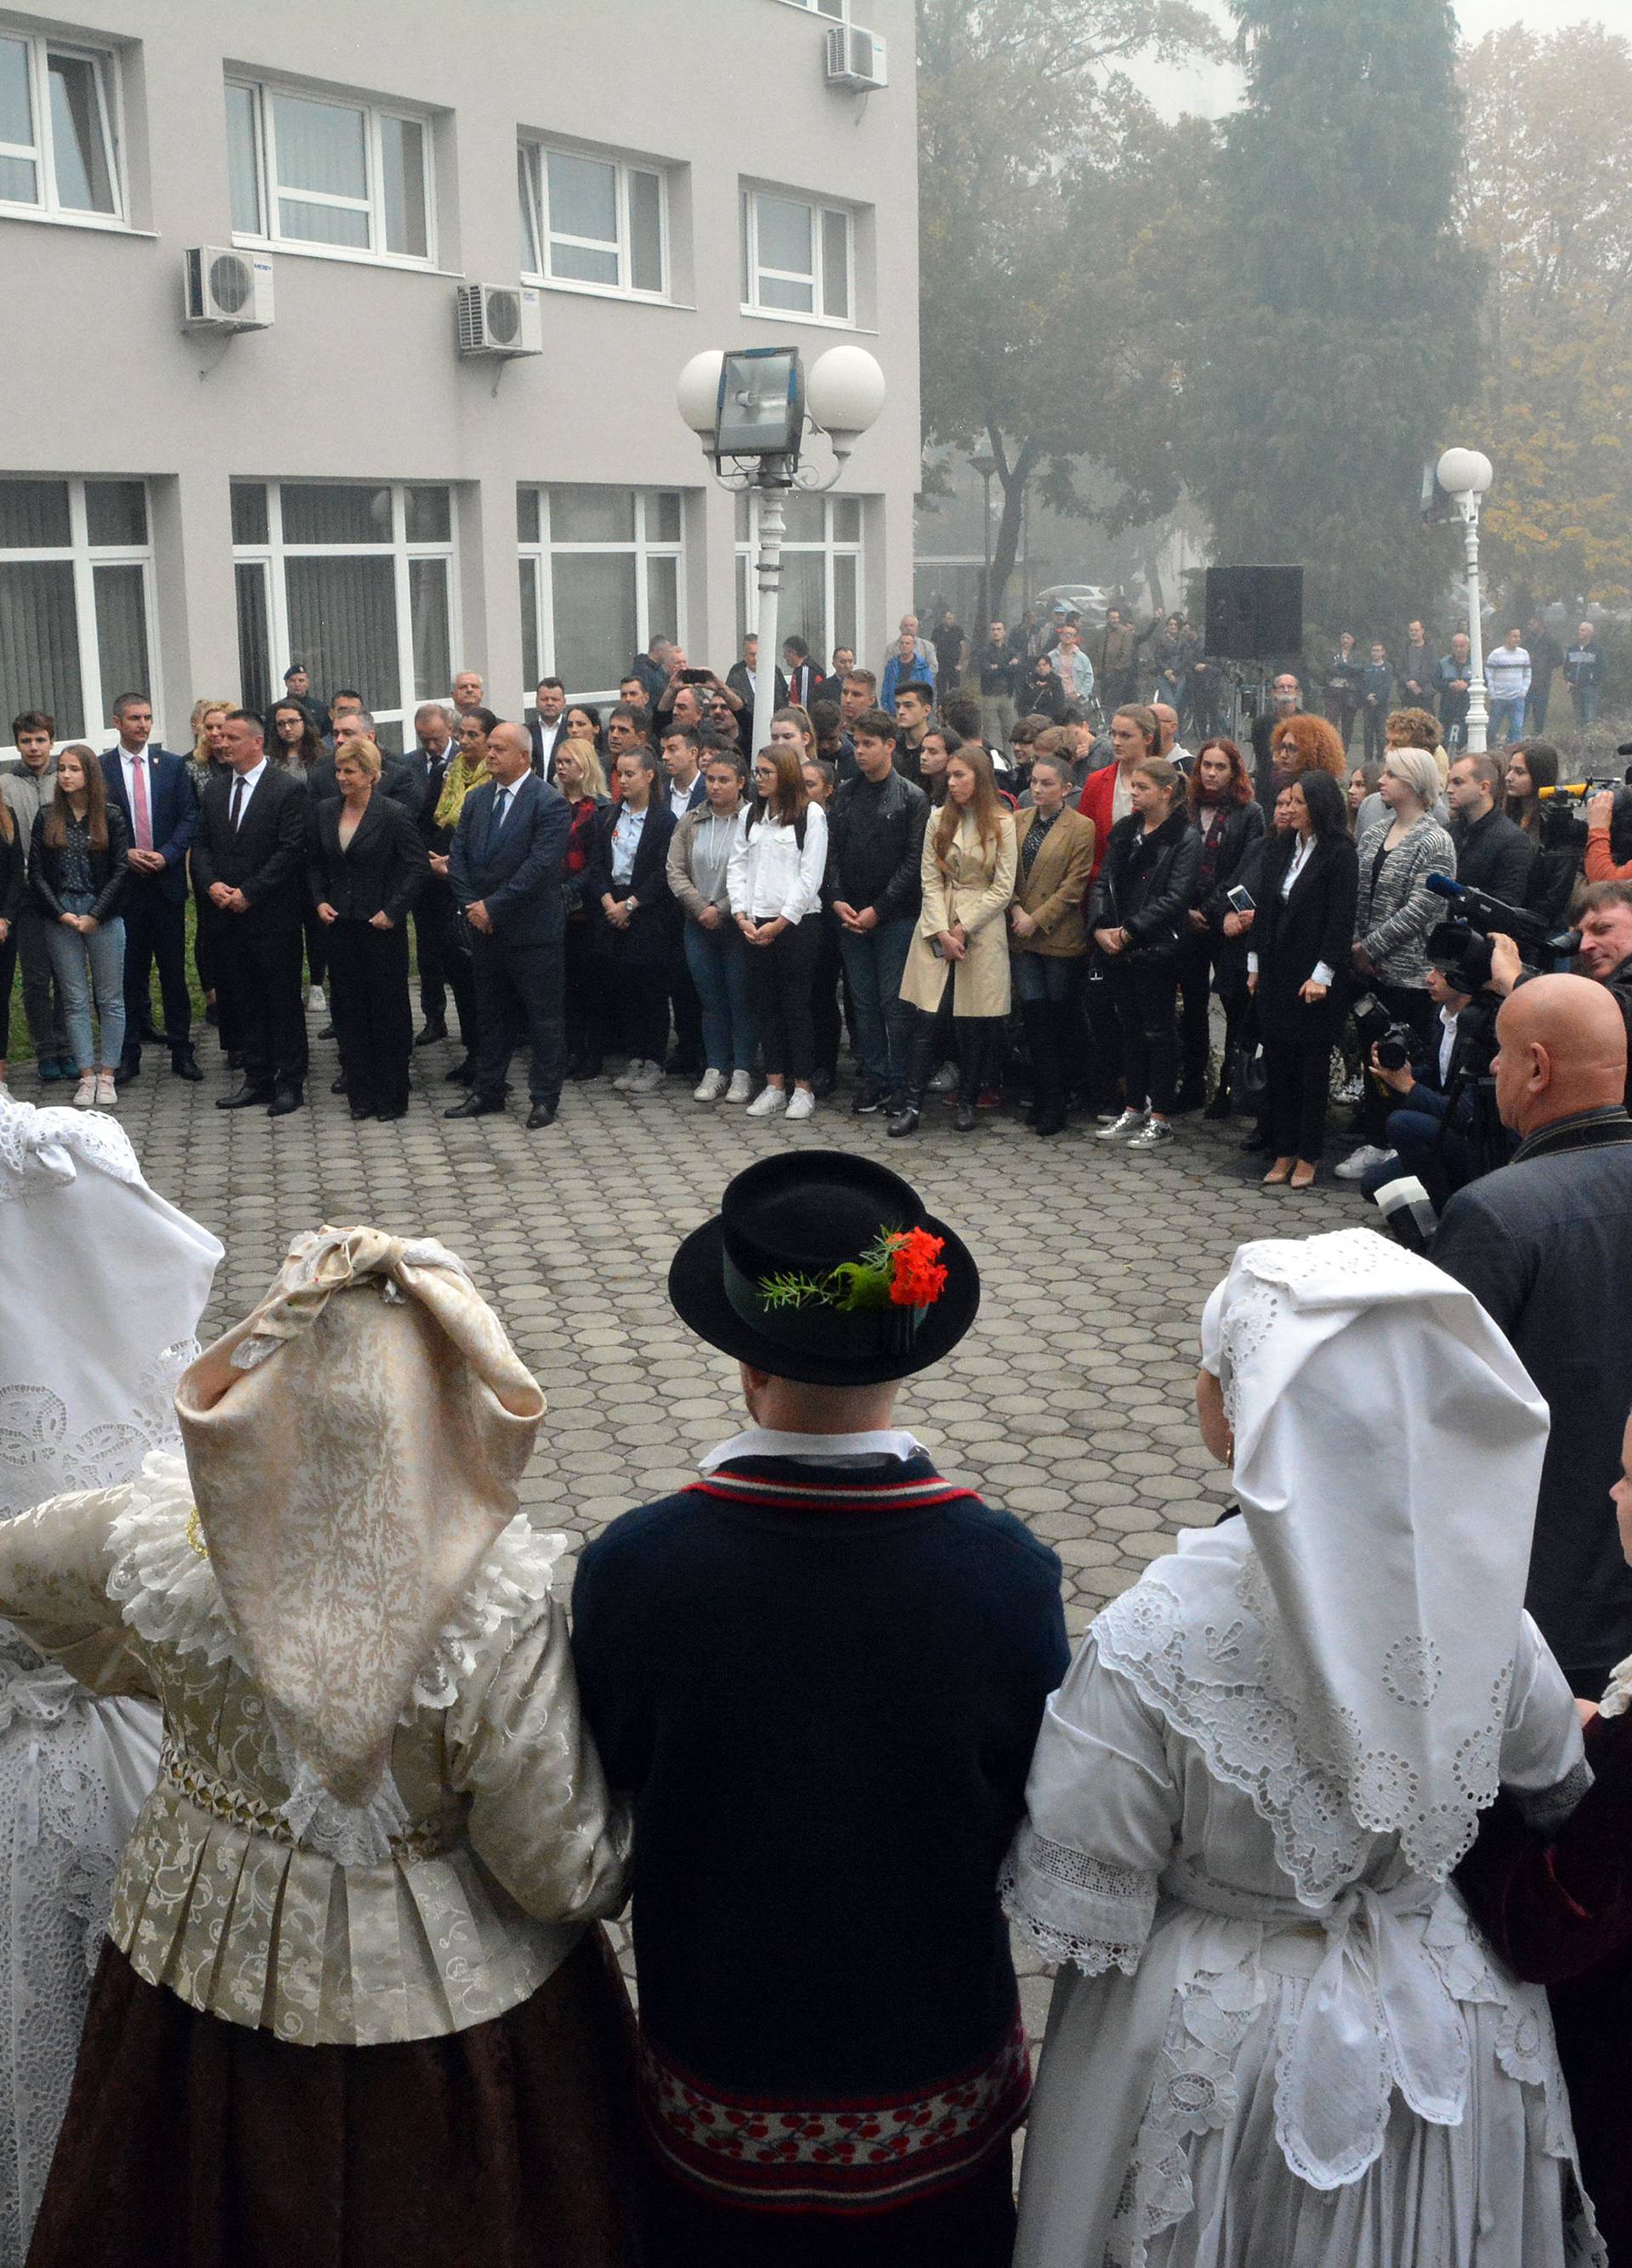 Slavonski Brod: Podizanjem zastave otvoren privremeni Ured predsjednice